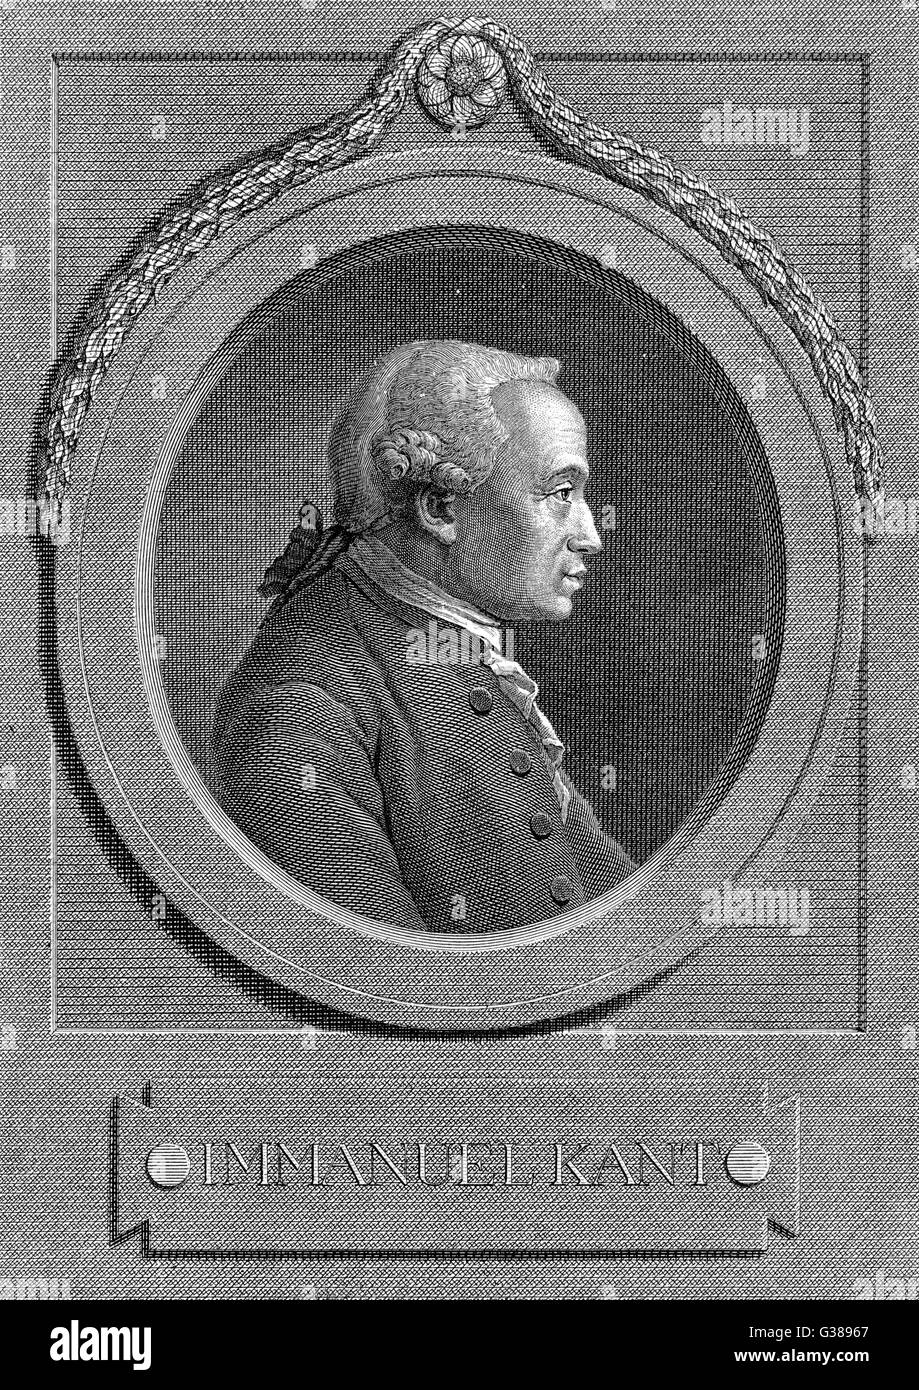 El filósofo alemán Immanuel Kant a la edad de 67 años Fecha: 1724 - 1804 Foto de stock